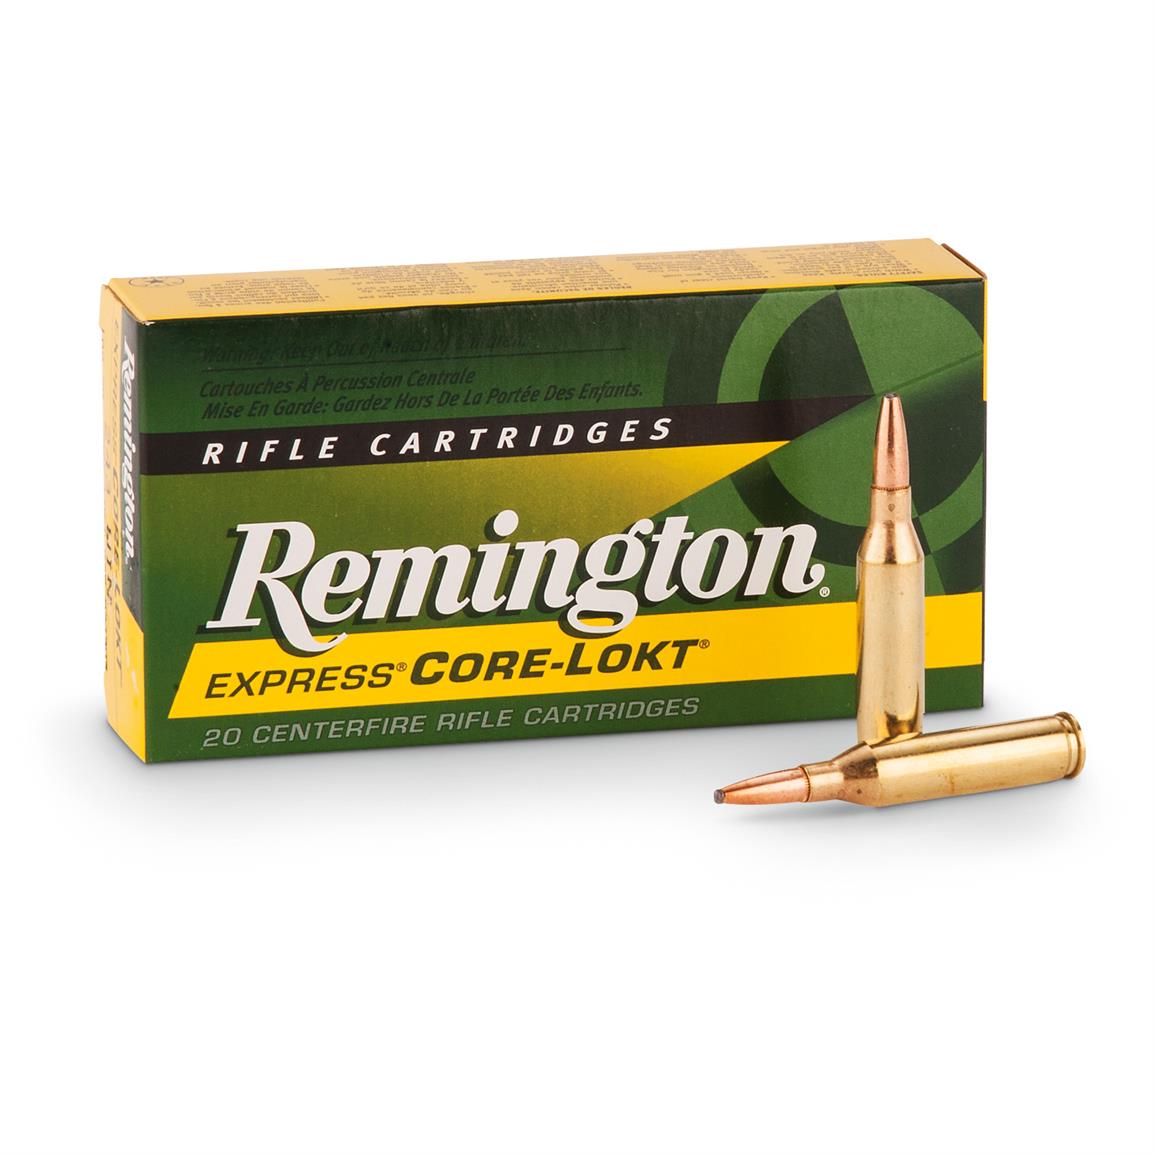 Remington Centerfire Rifle Cartridges